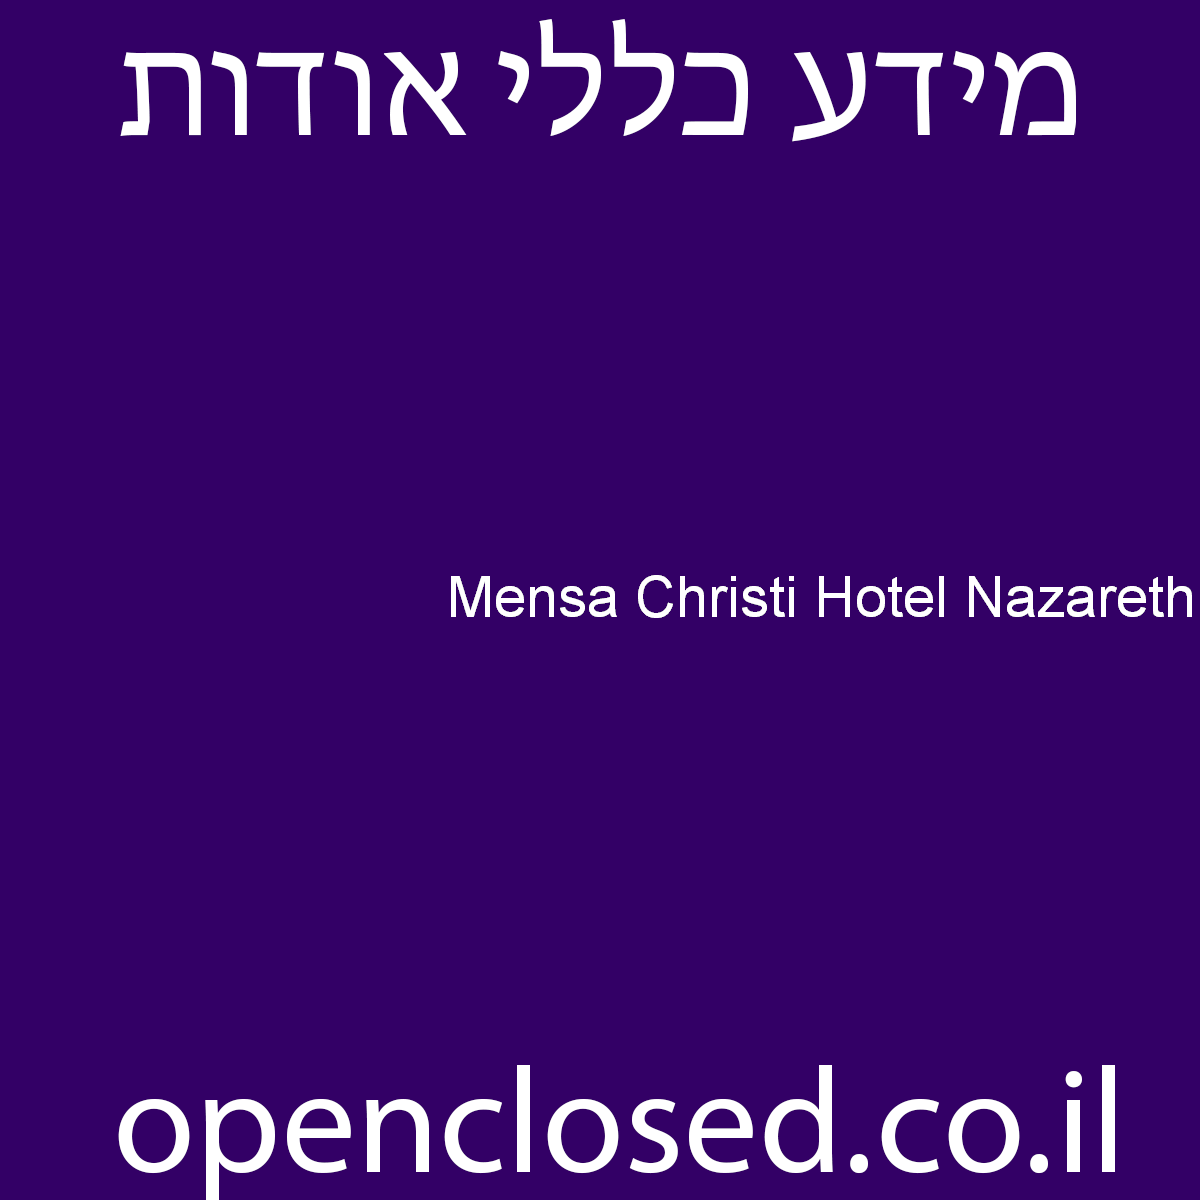 Mensa Christi Hotel Nazareth